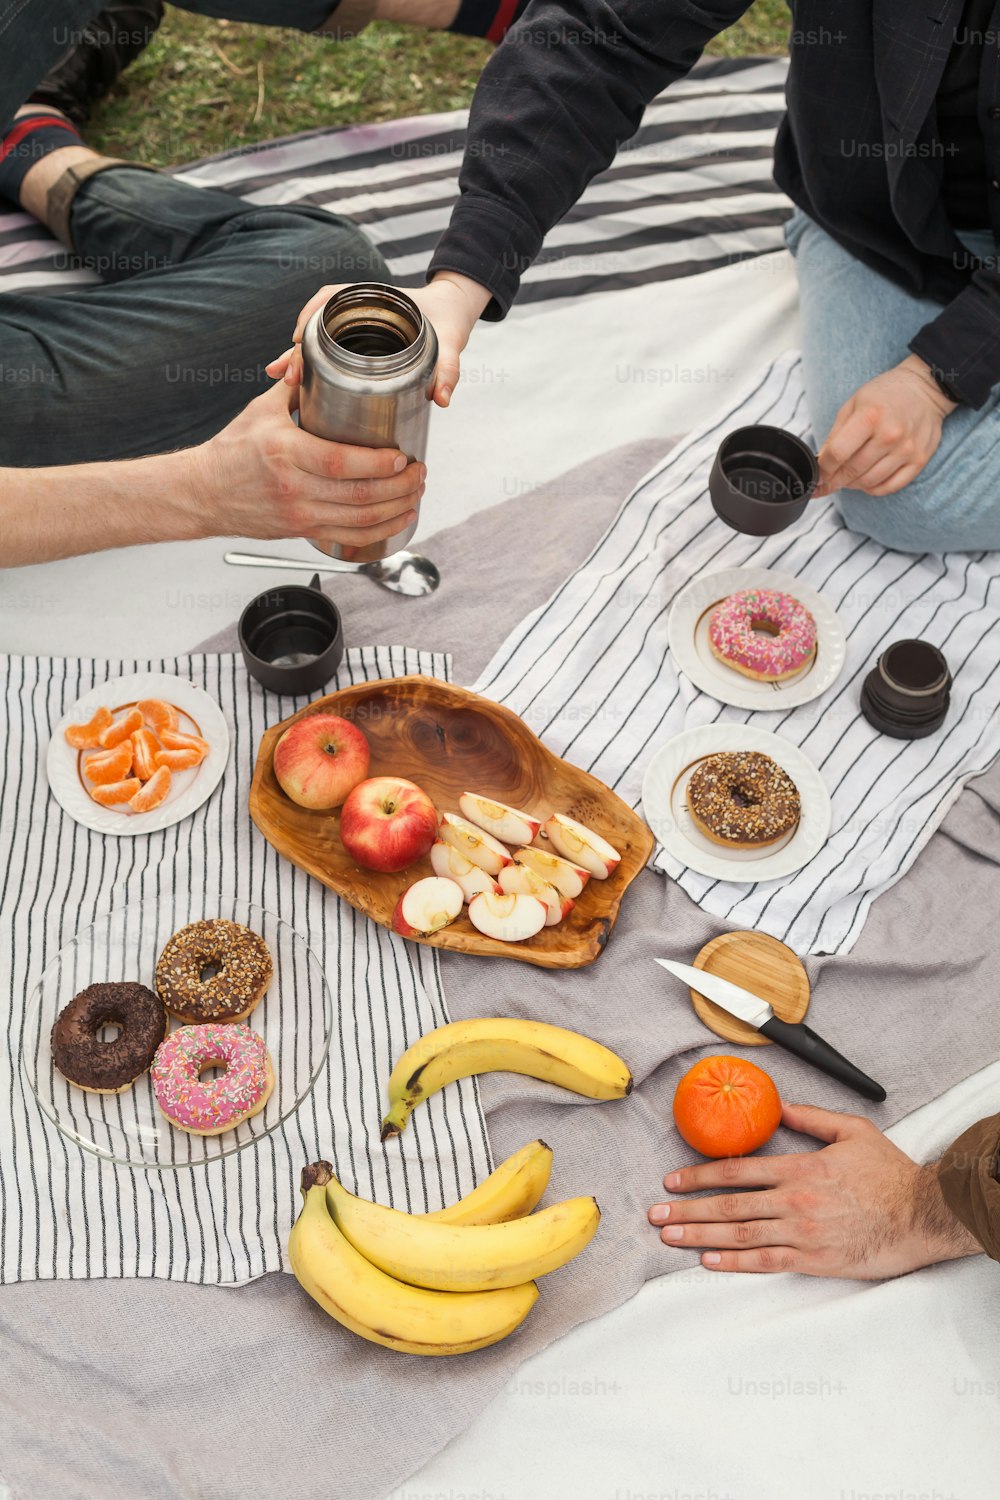 un groupe de personnes assises autour d’une table avec des beignets et des fruits